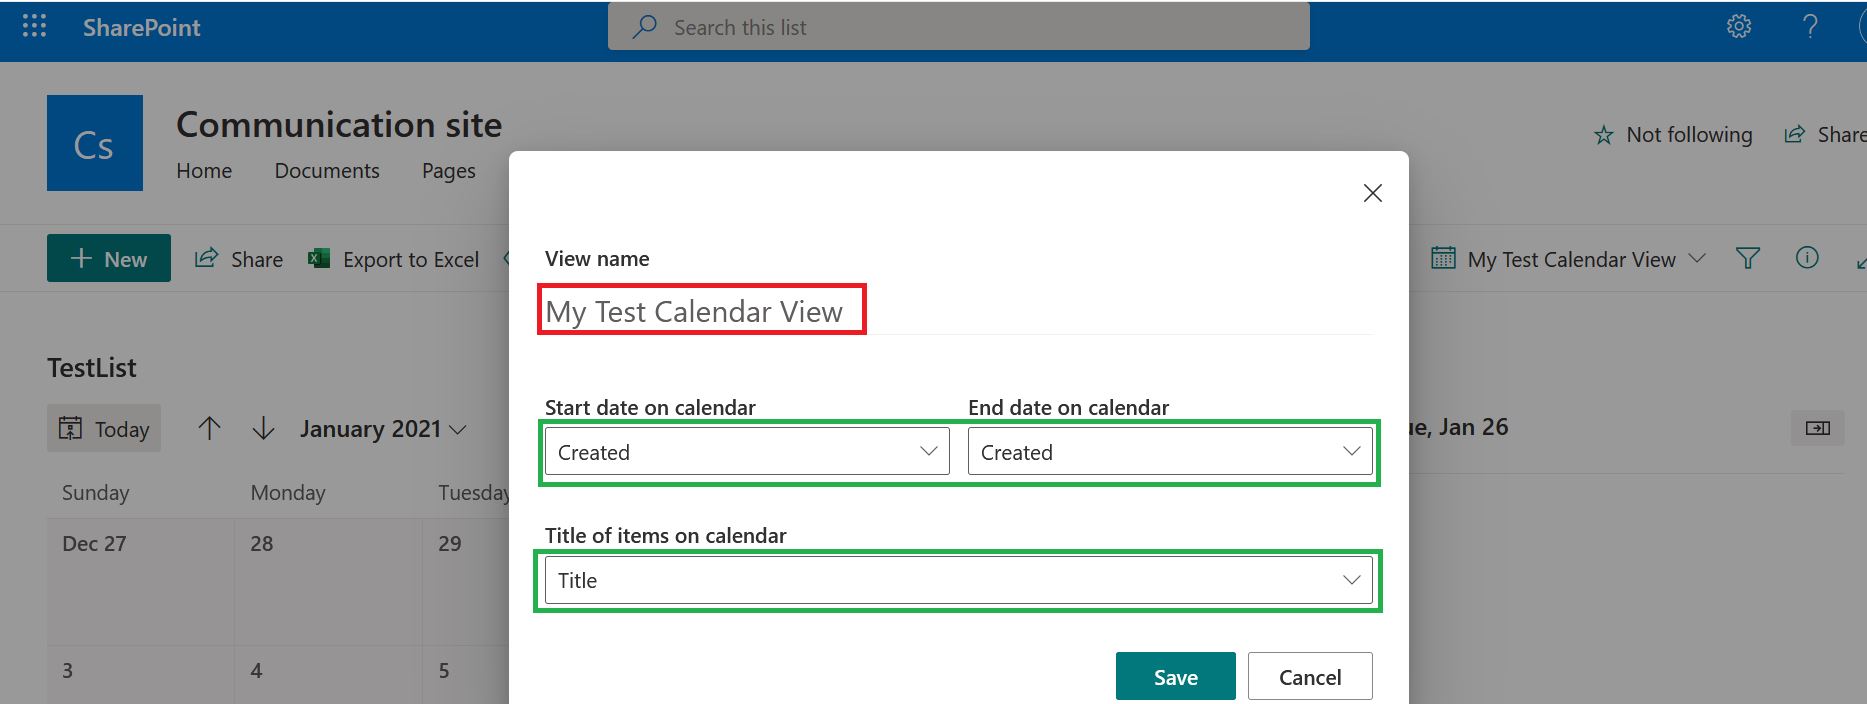 Calendar view configuration in modern SharePoint Online list